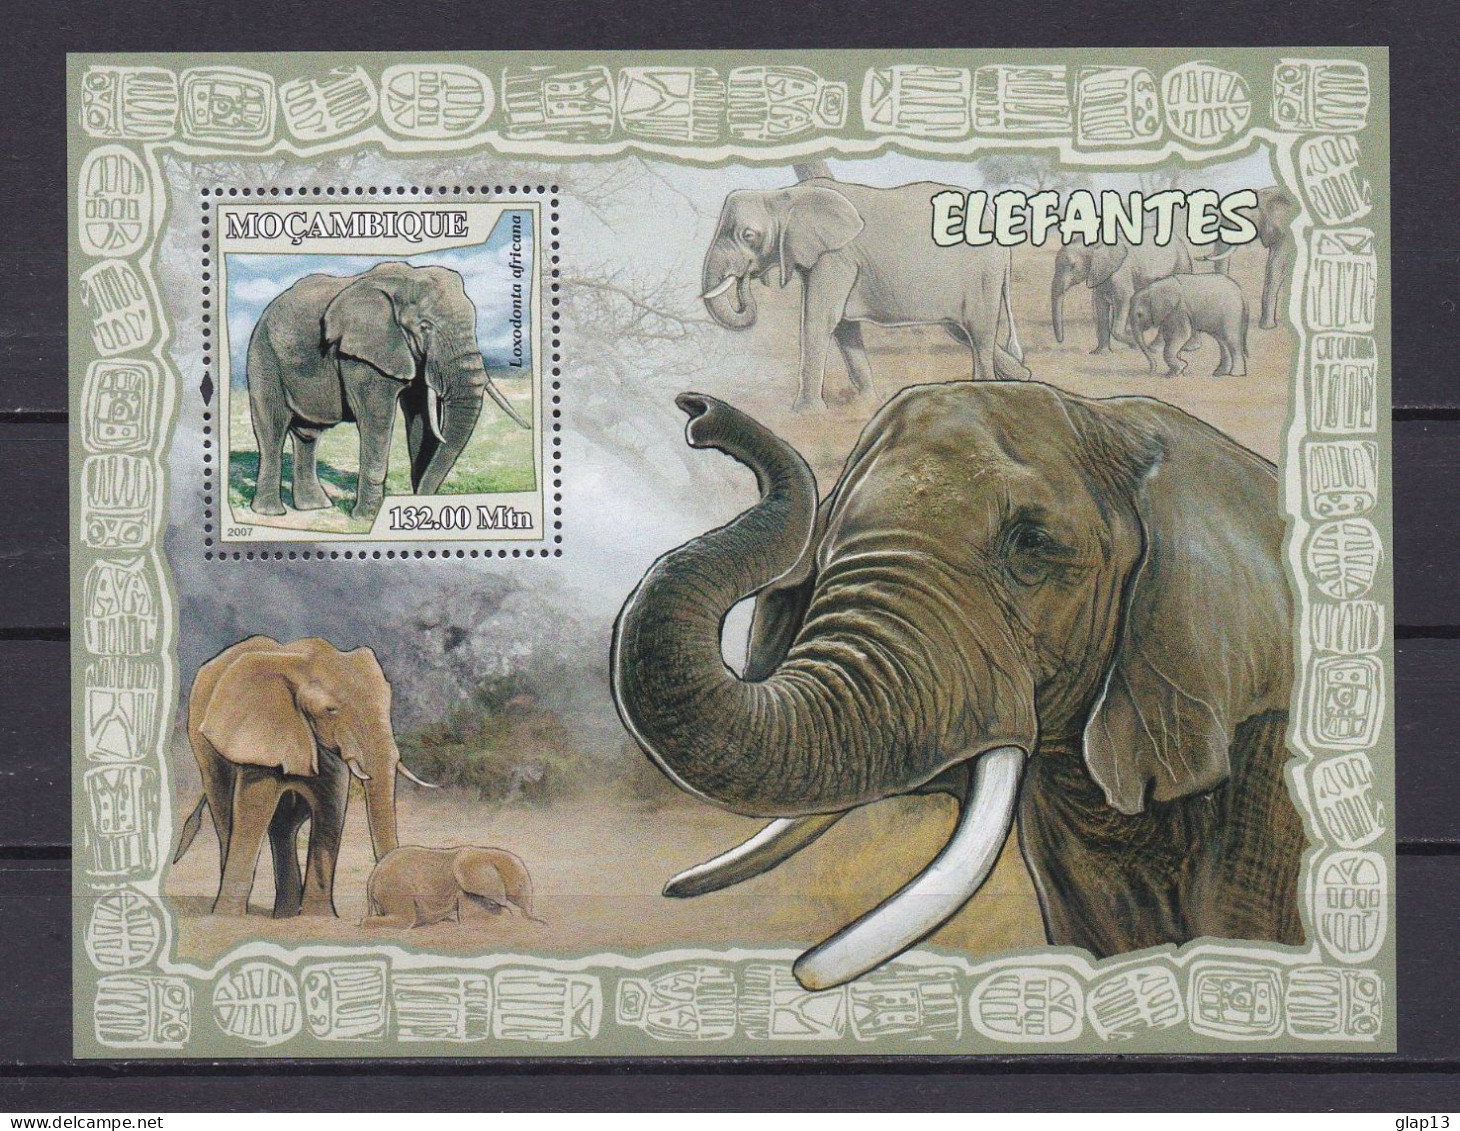 MOZAMBIQUE 2007 BLOC N°162 NEUF** ELEPHANTS - Mozambique